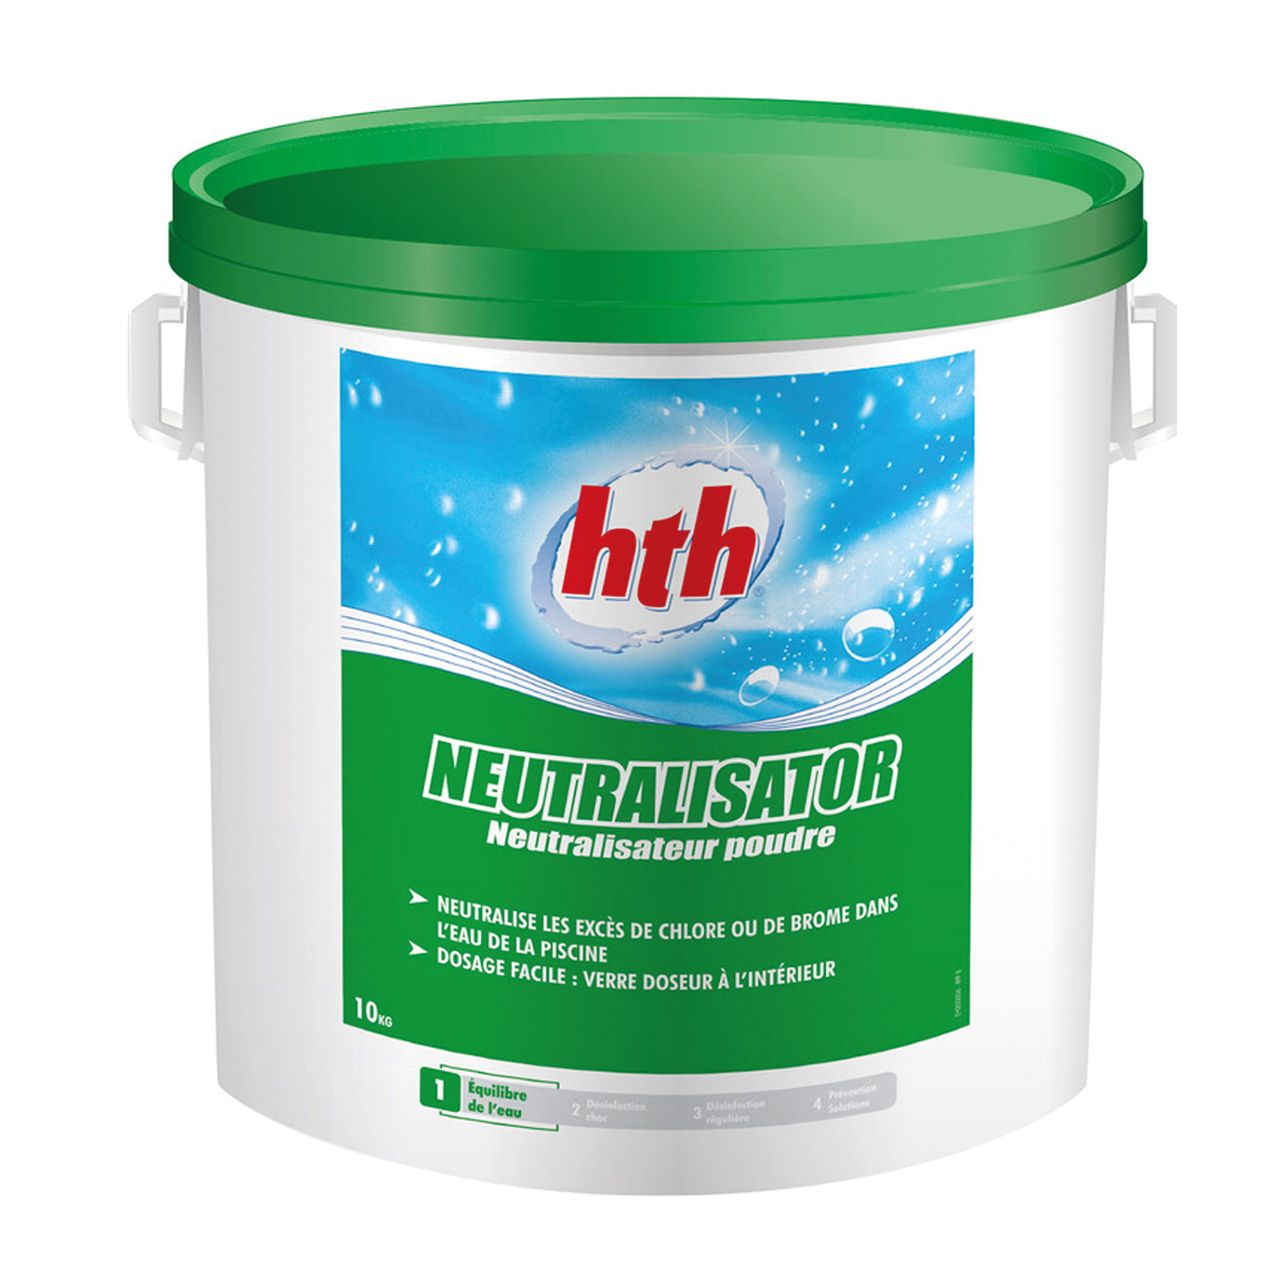 HTH Neutralisator 10kg